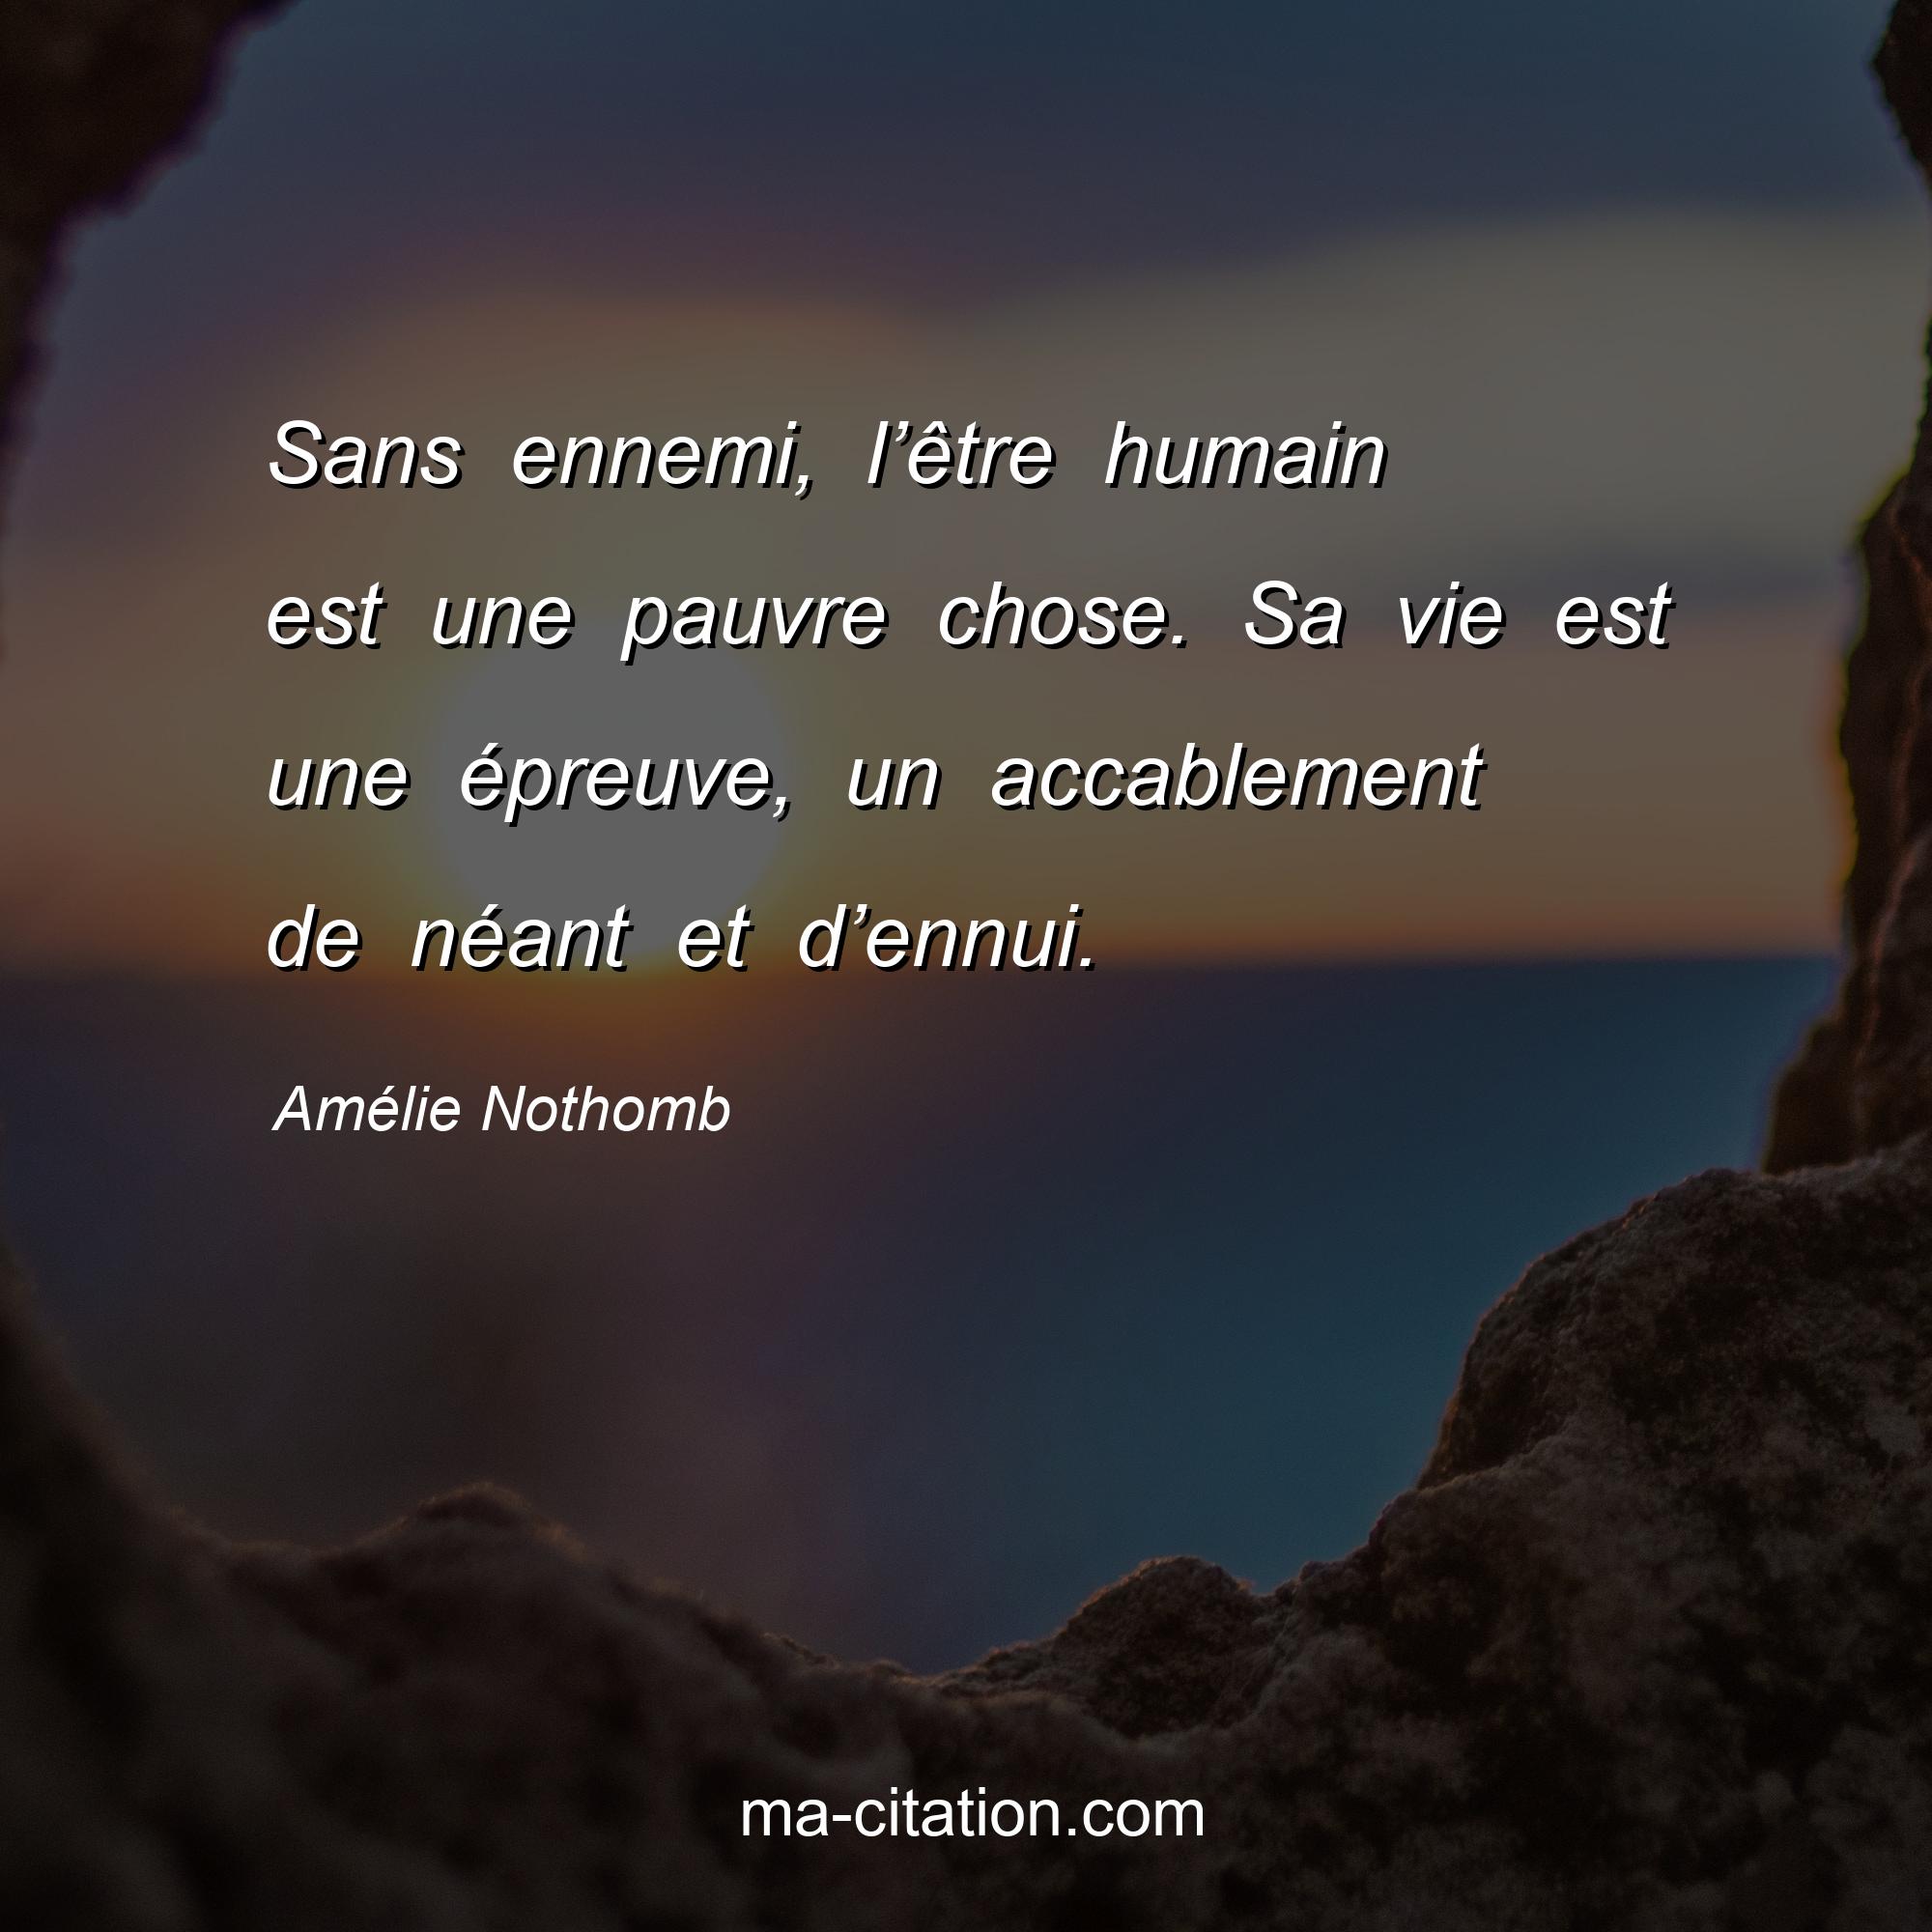 Amélie Nothomb : Sans ennemi, l’être humain est une pauvre chose. Sa vie est une épreuve, un accablement de néant et d’ennui.